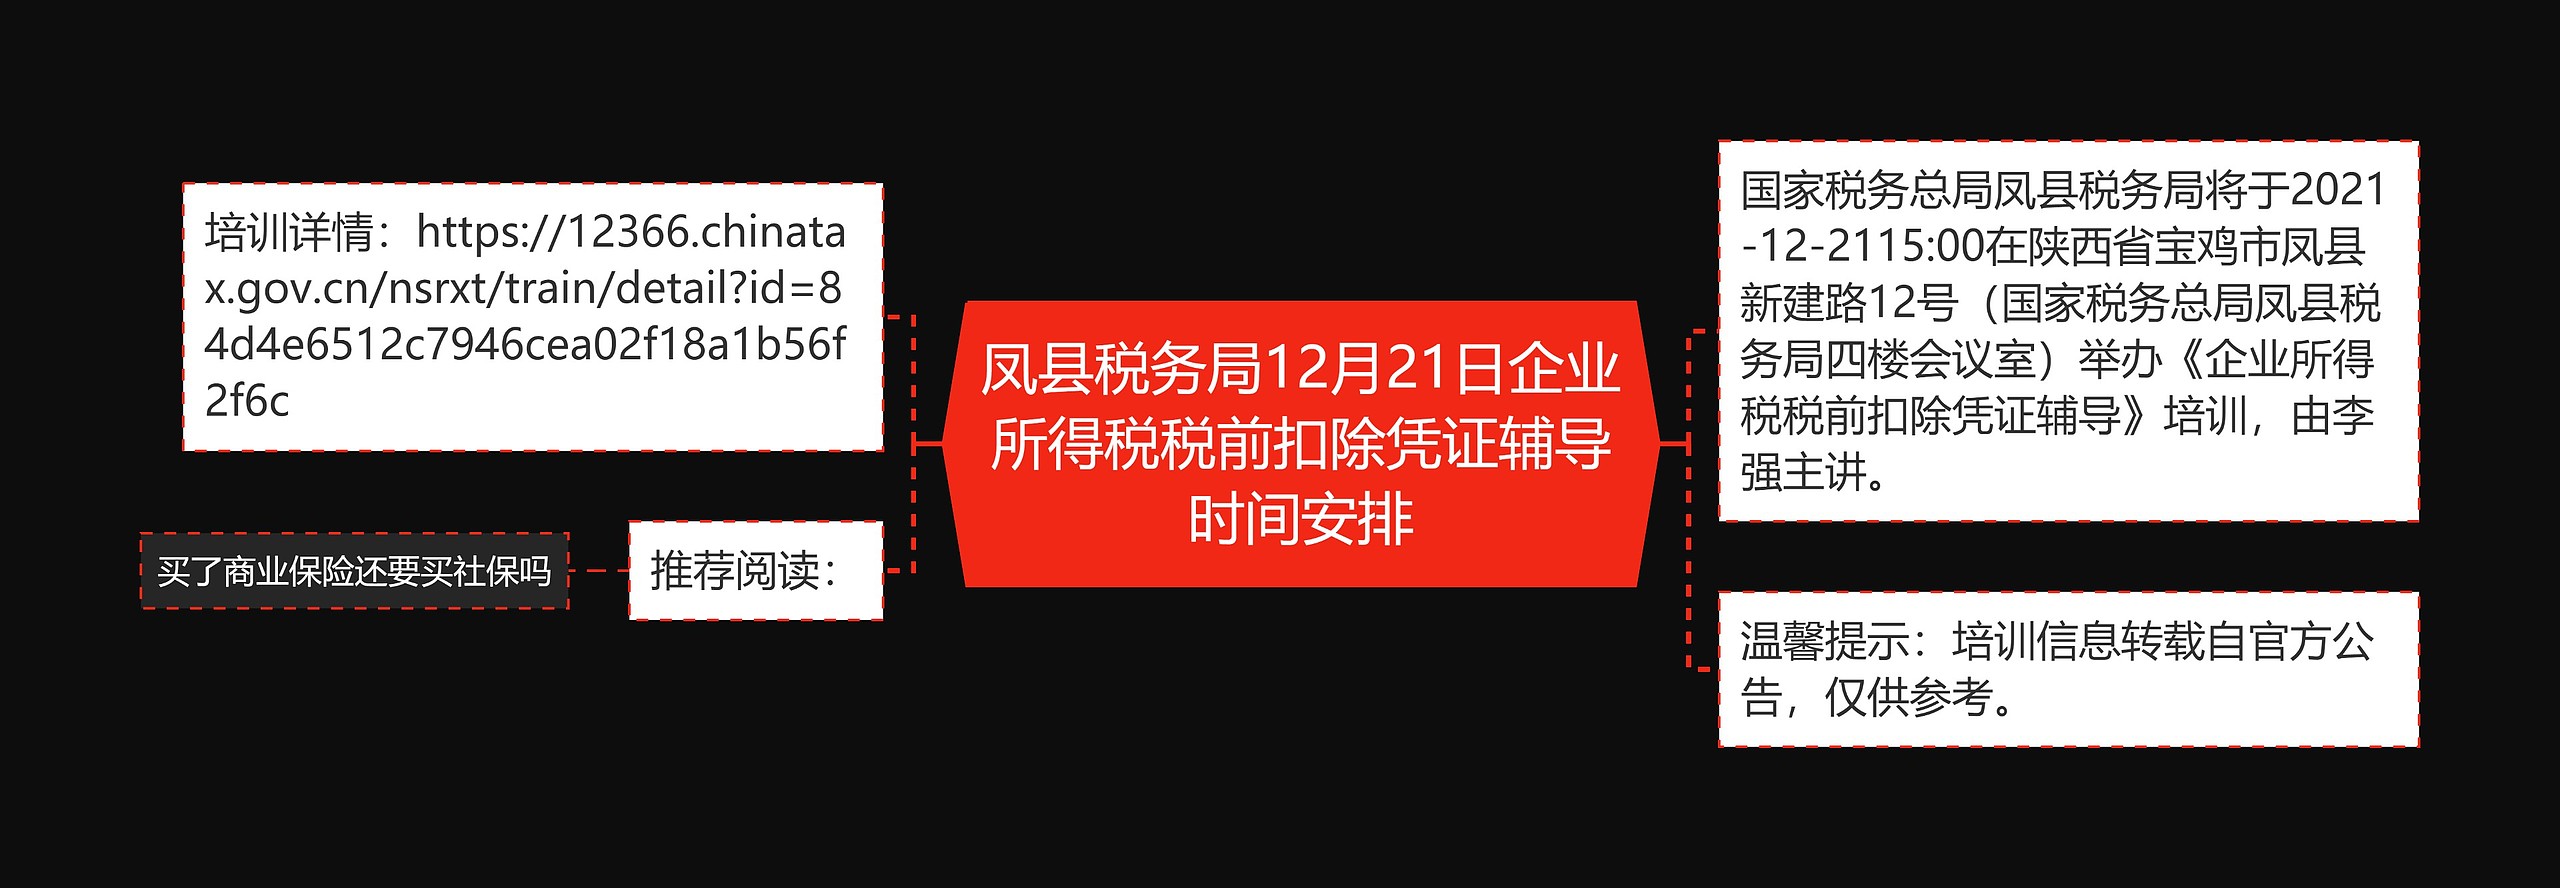 凤县税务局12月21日企业所得税税前扣除凭证辅导时间安排思维导图